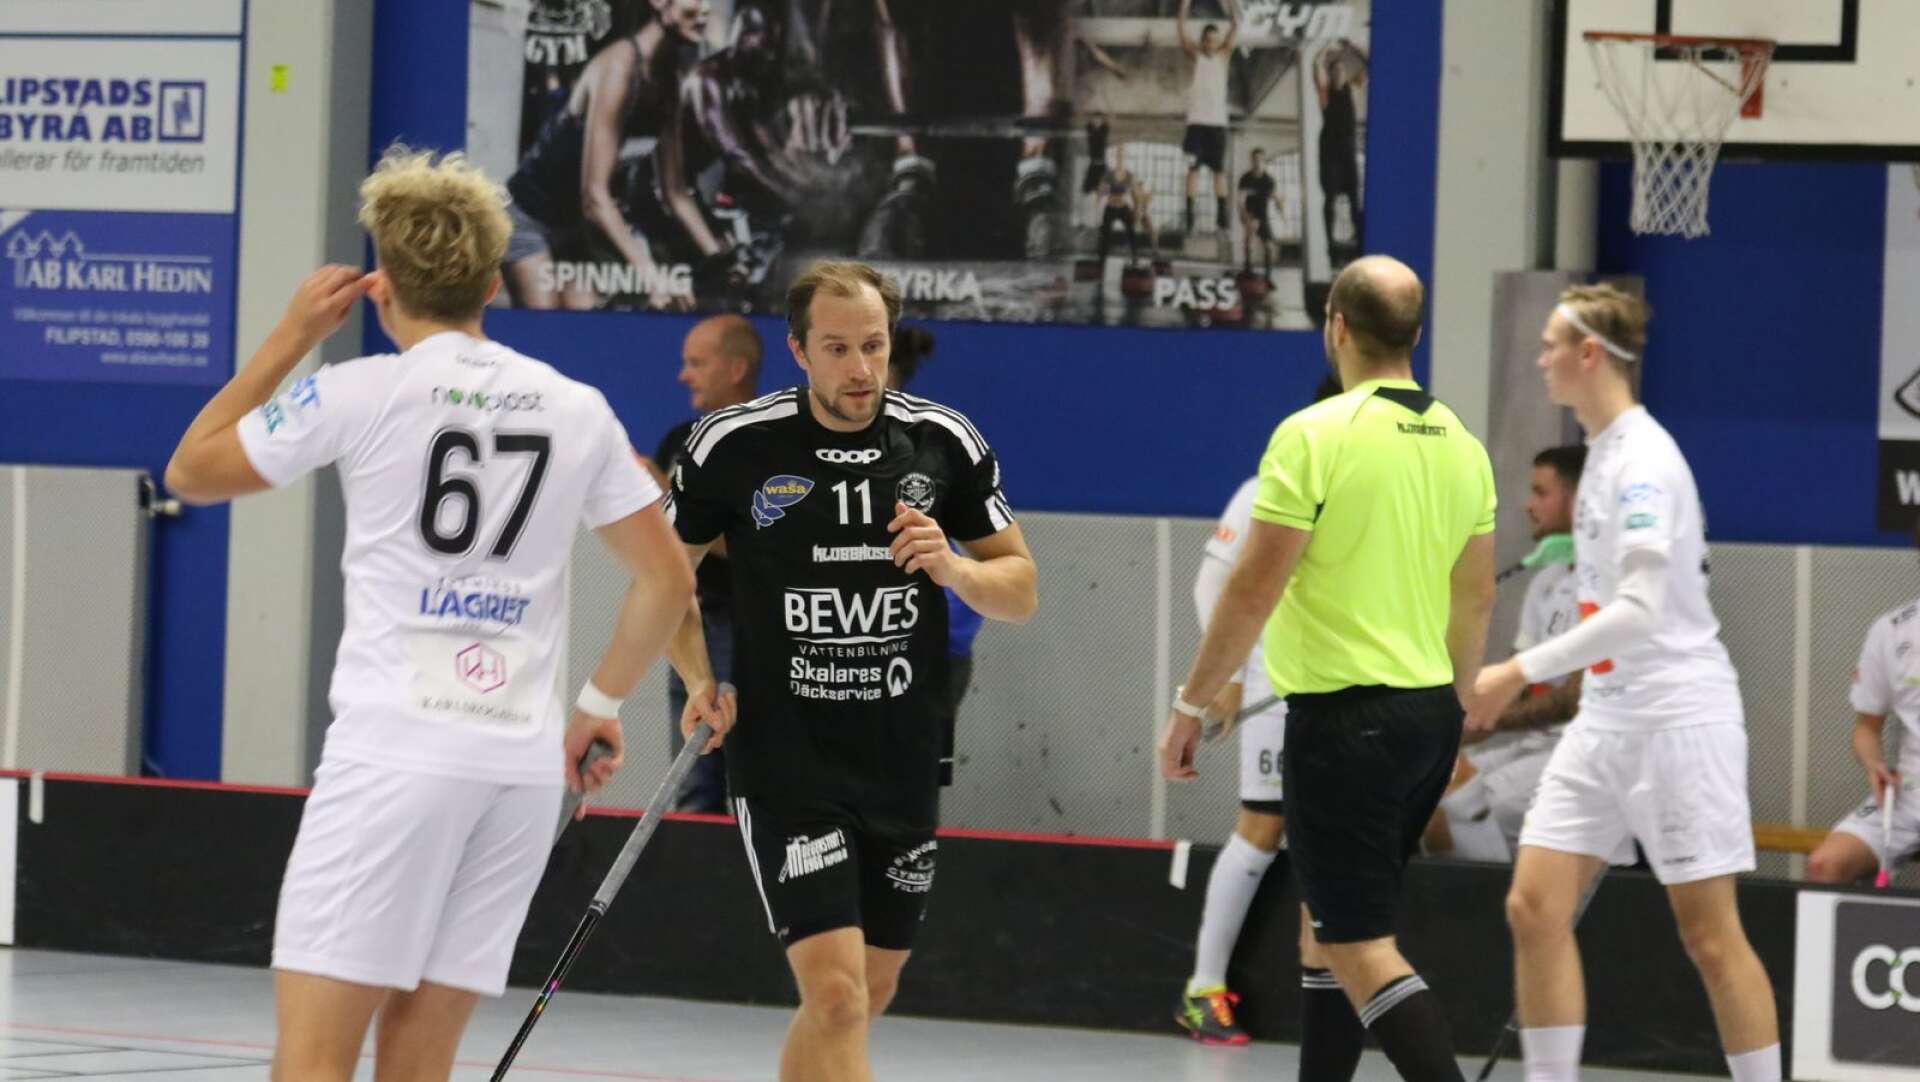 Henrik Nordblad skadade sig under matchen mot Skattkärr och fick gå av planen.